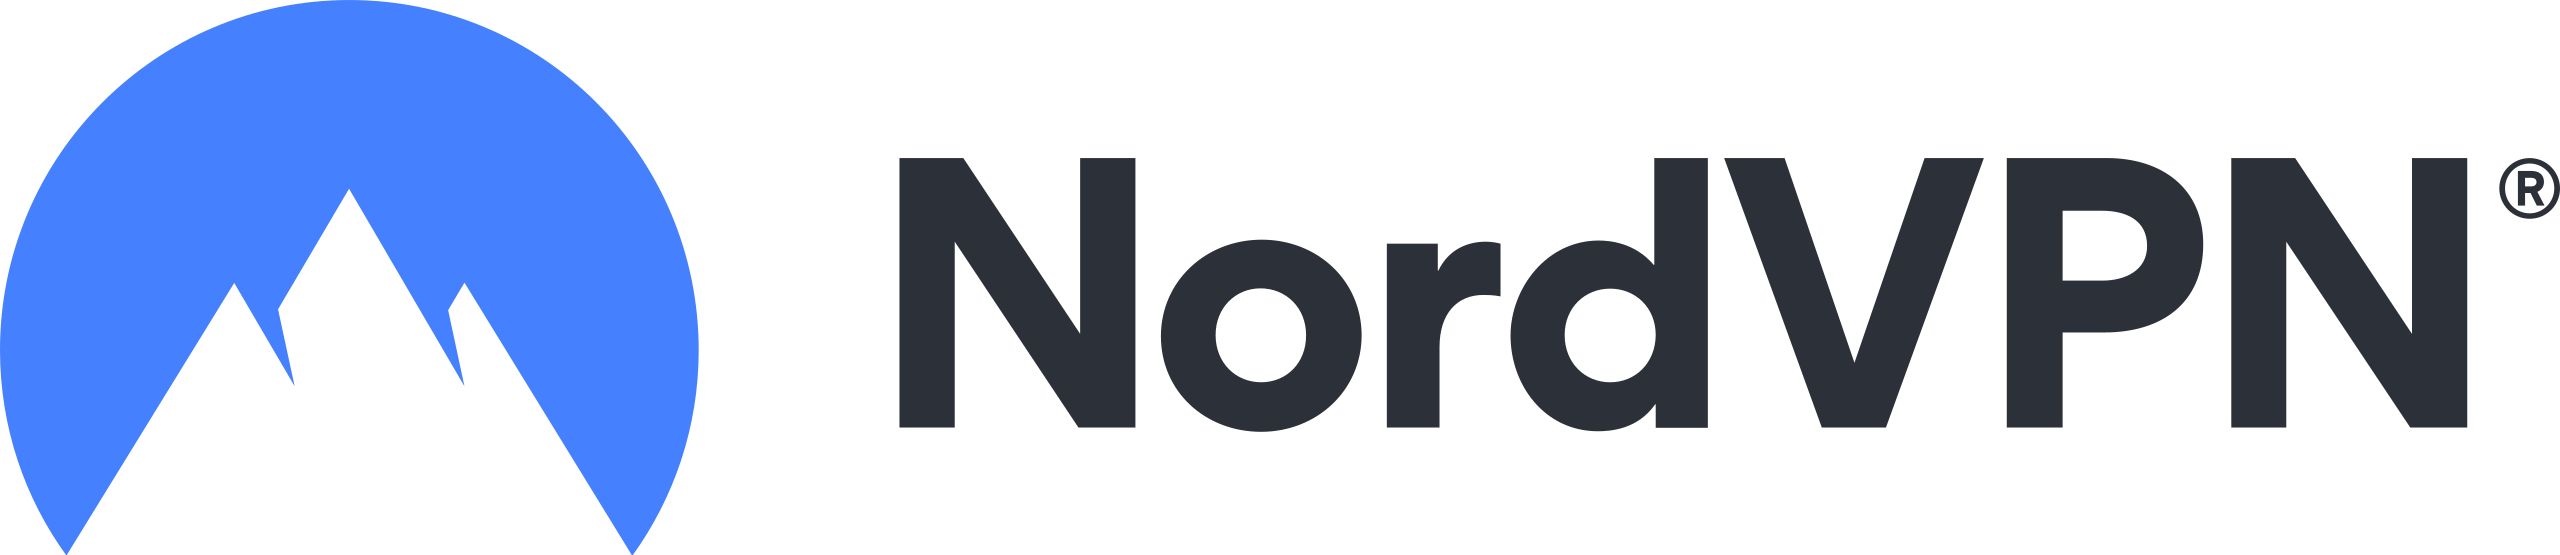 NordVPN_logo.svg